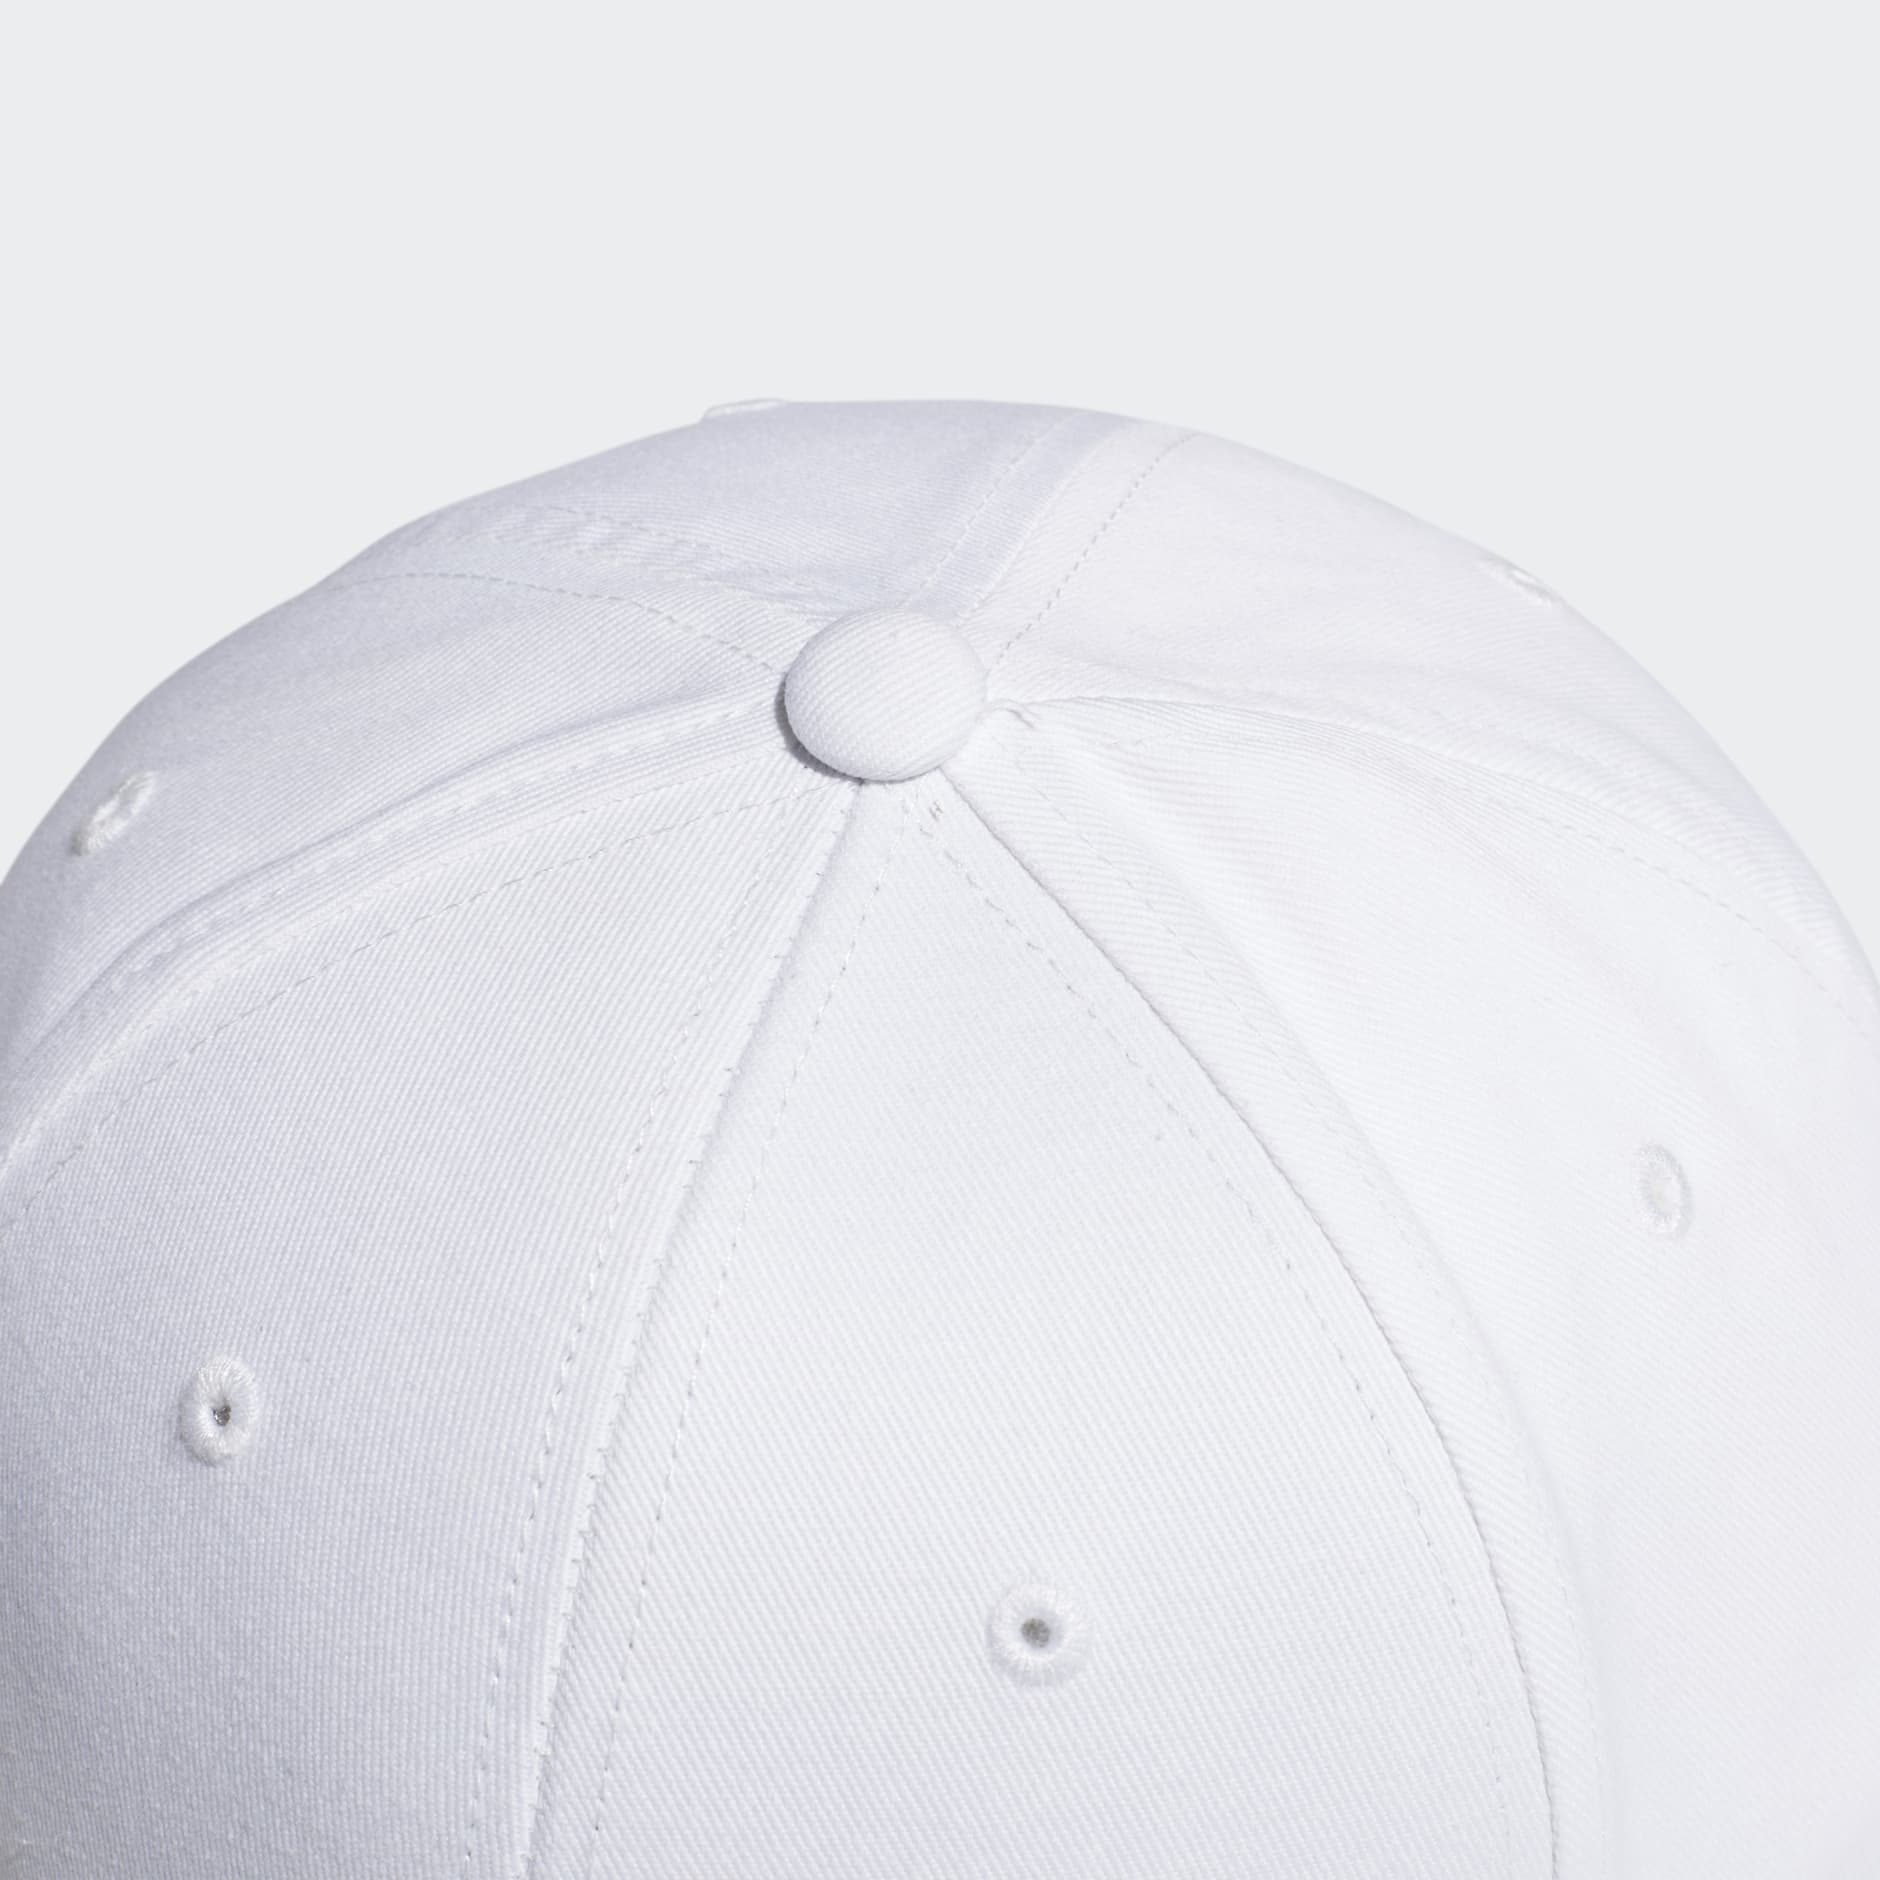 Adidas Cotton Baseball Cap